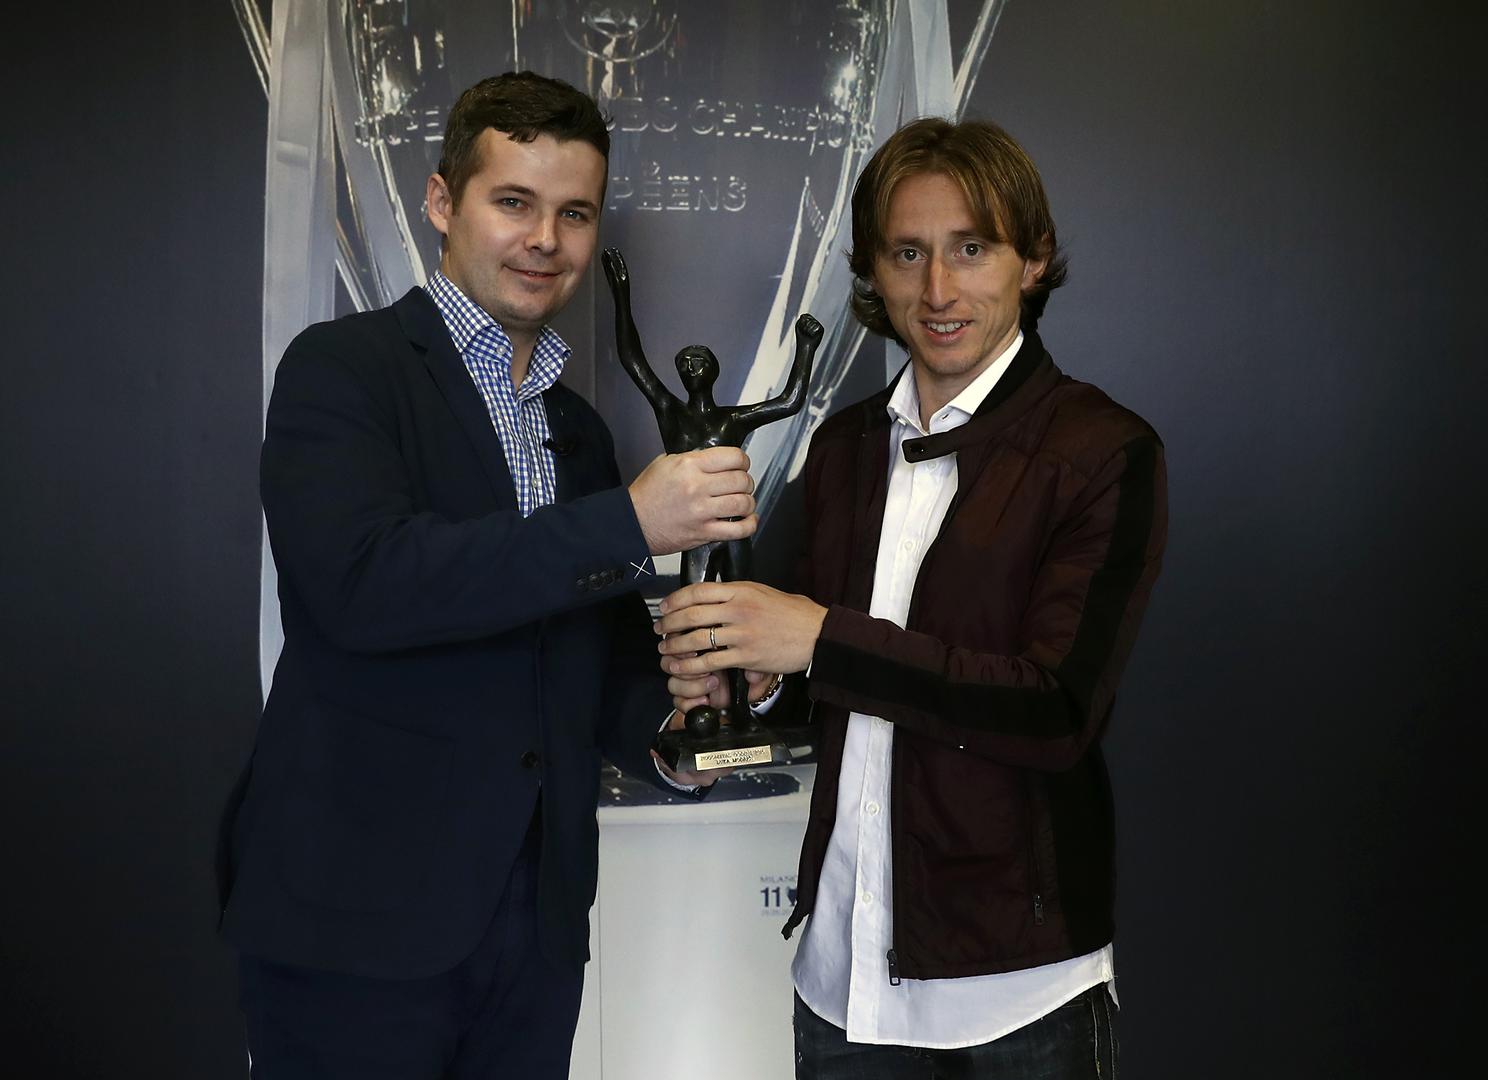 Predstavljene su i brojne nagrade koje je osvojio: Od nagrade Večernjeg lista za hrvatskog nogometaša godine pa sve do nagrade za najboljeg veznjaka svijeta.